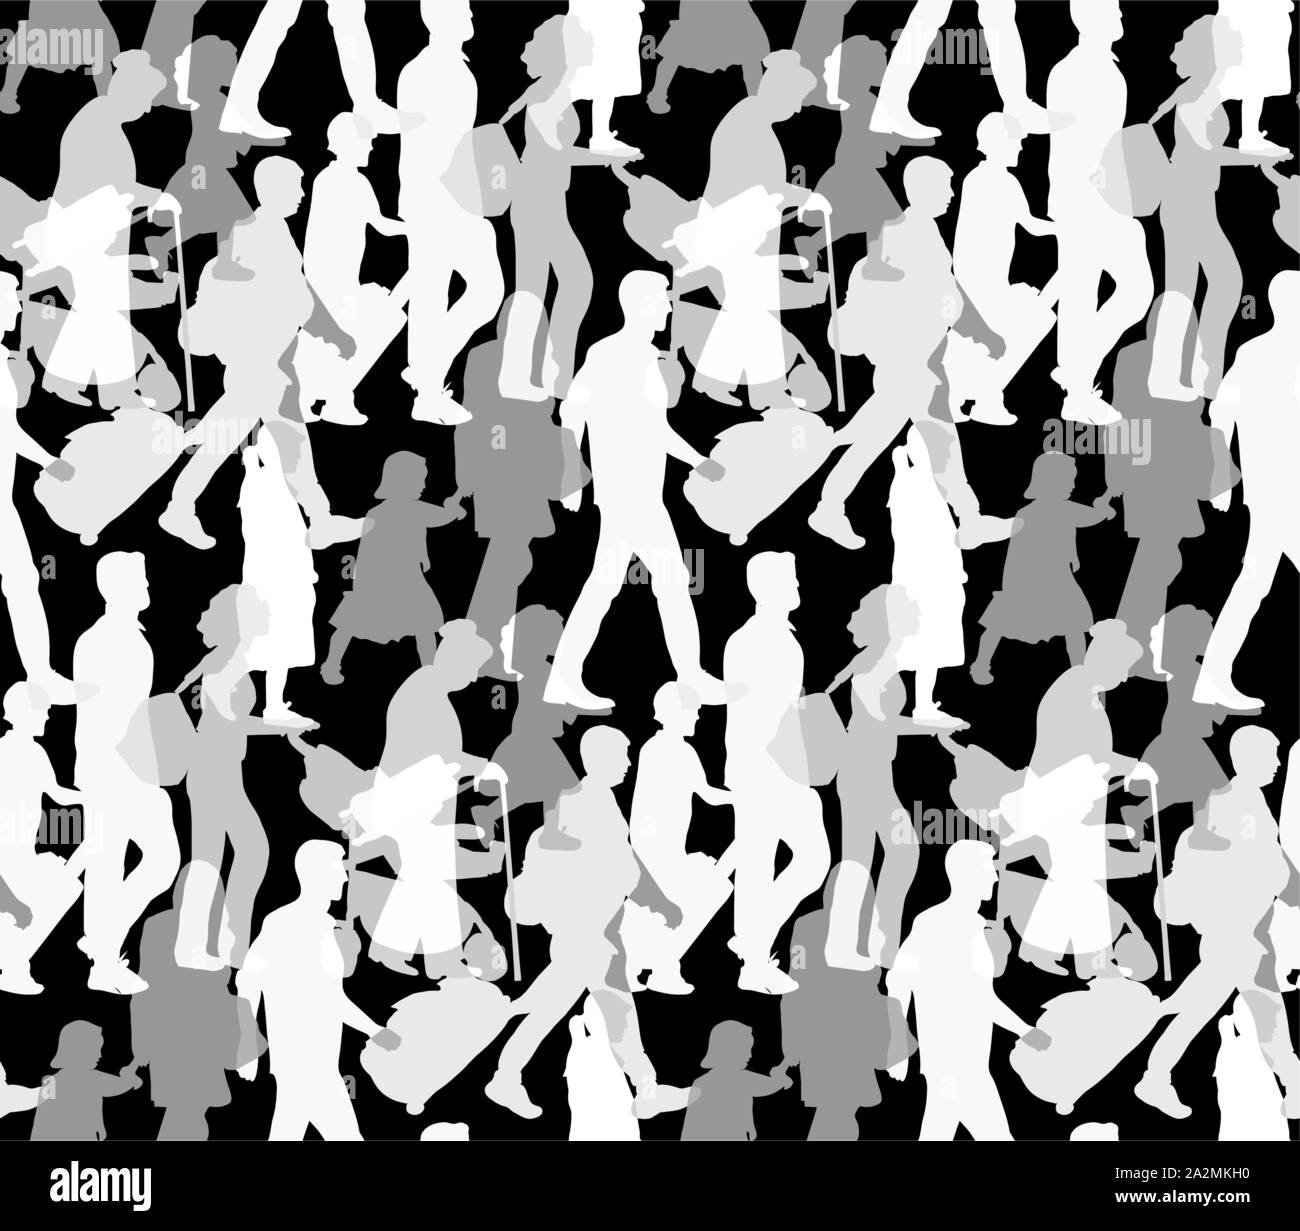 Famille heureuse les gens silhouette noir et blanc motif transparent. Vector illustration monochrome8 EPS Illustration de Vecteur